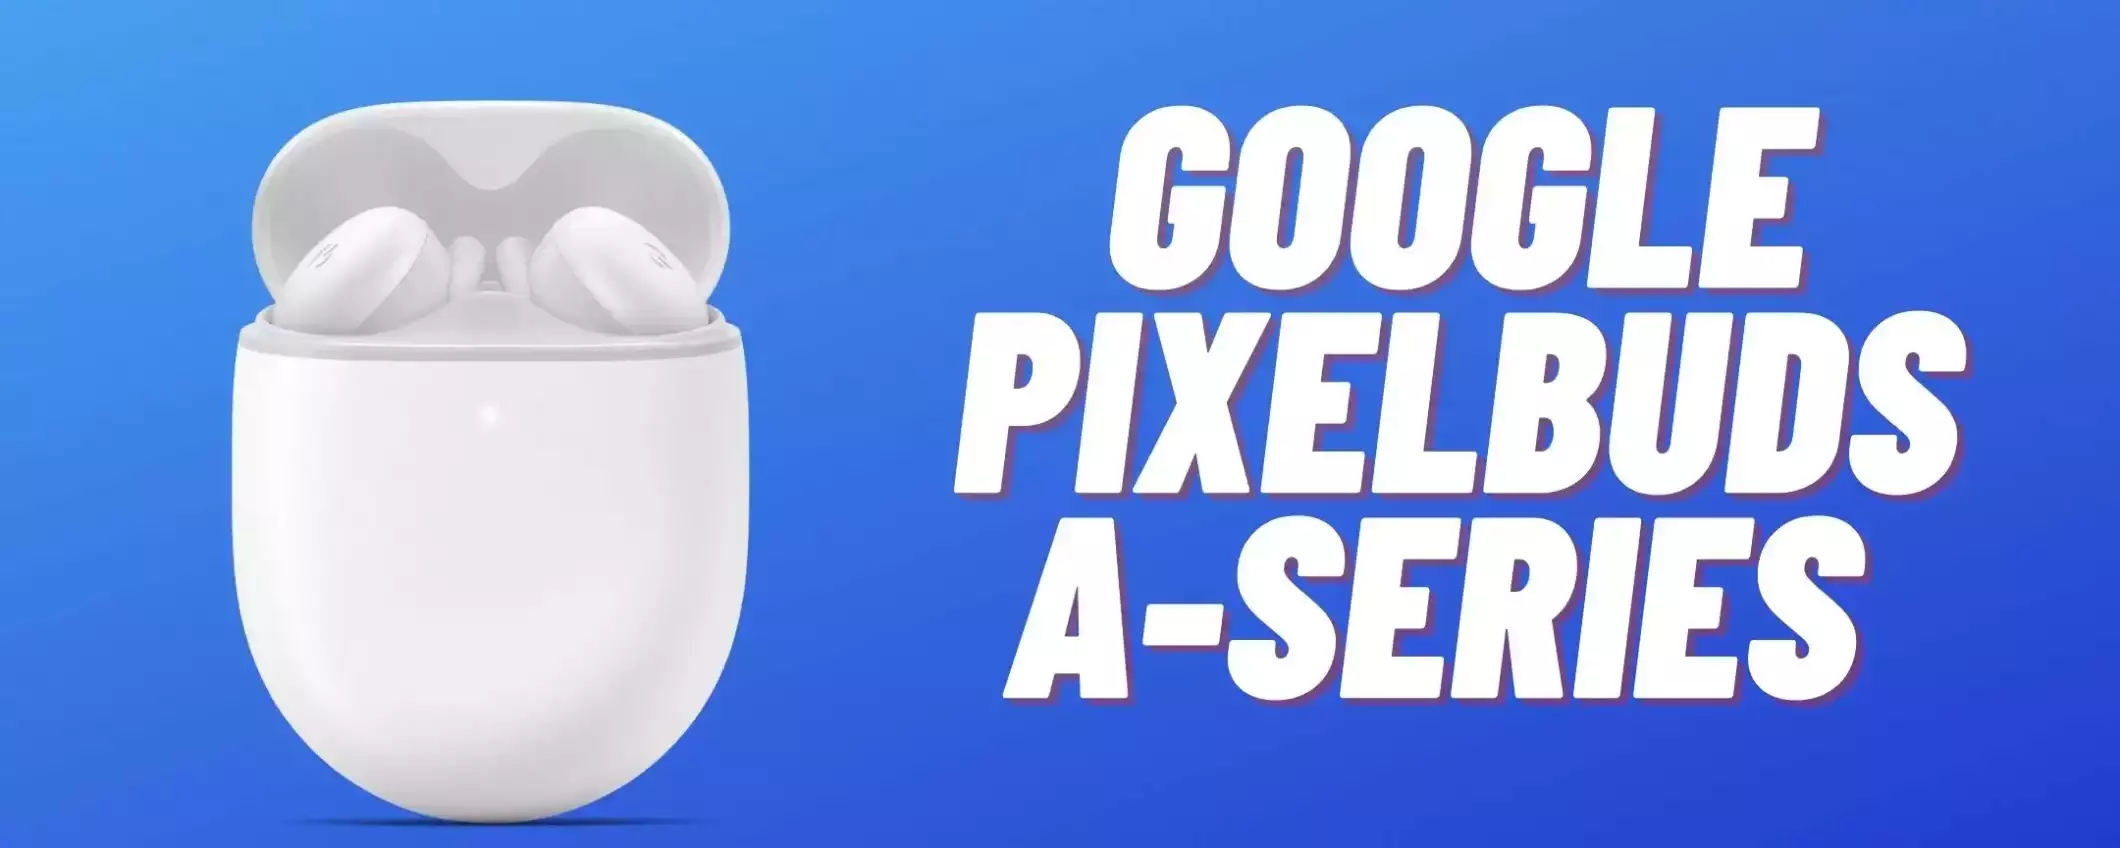 Google Pixel Buds A-Series a meno di 110€ su Amazon